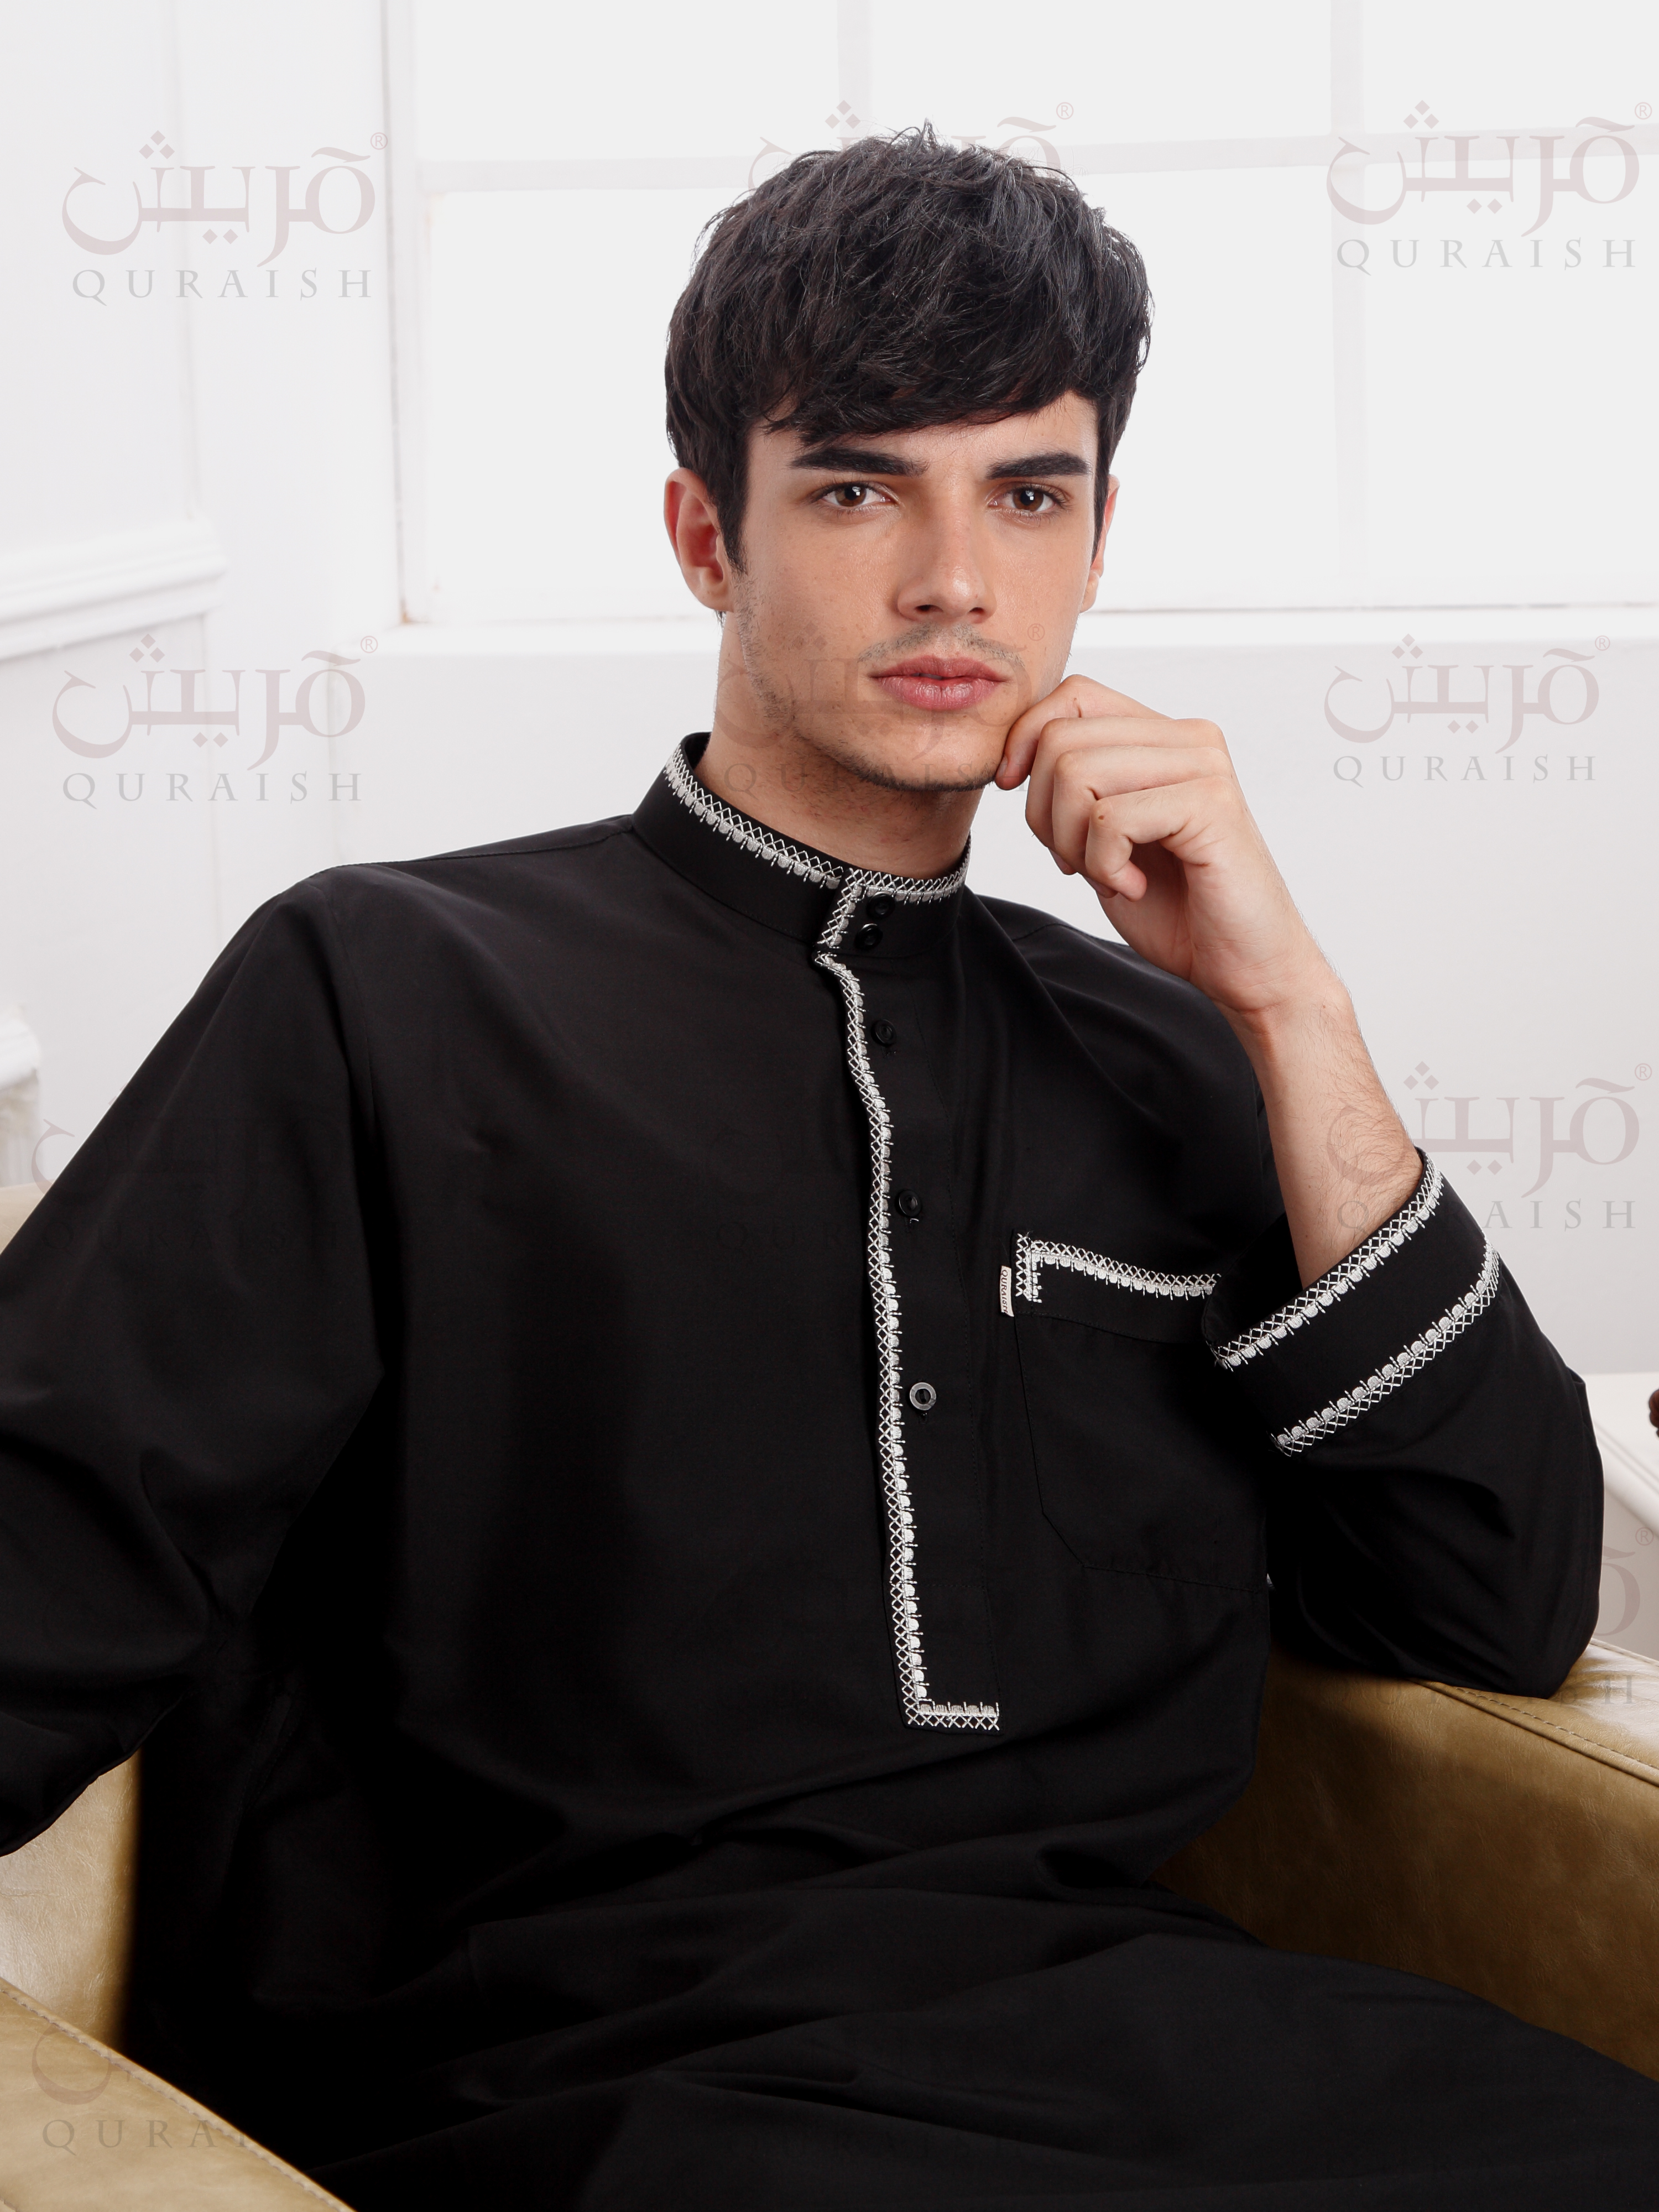 bulk wholesale Dubai  Embroidery fashion men'suit supplier manufacturer factory